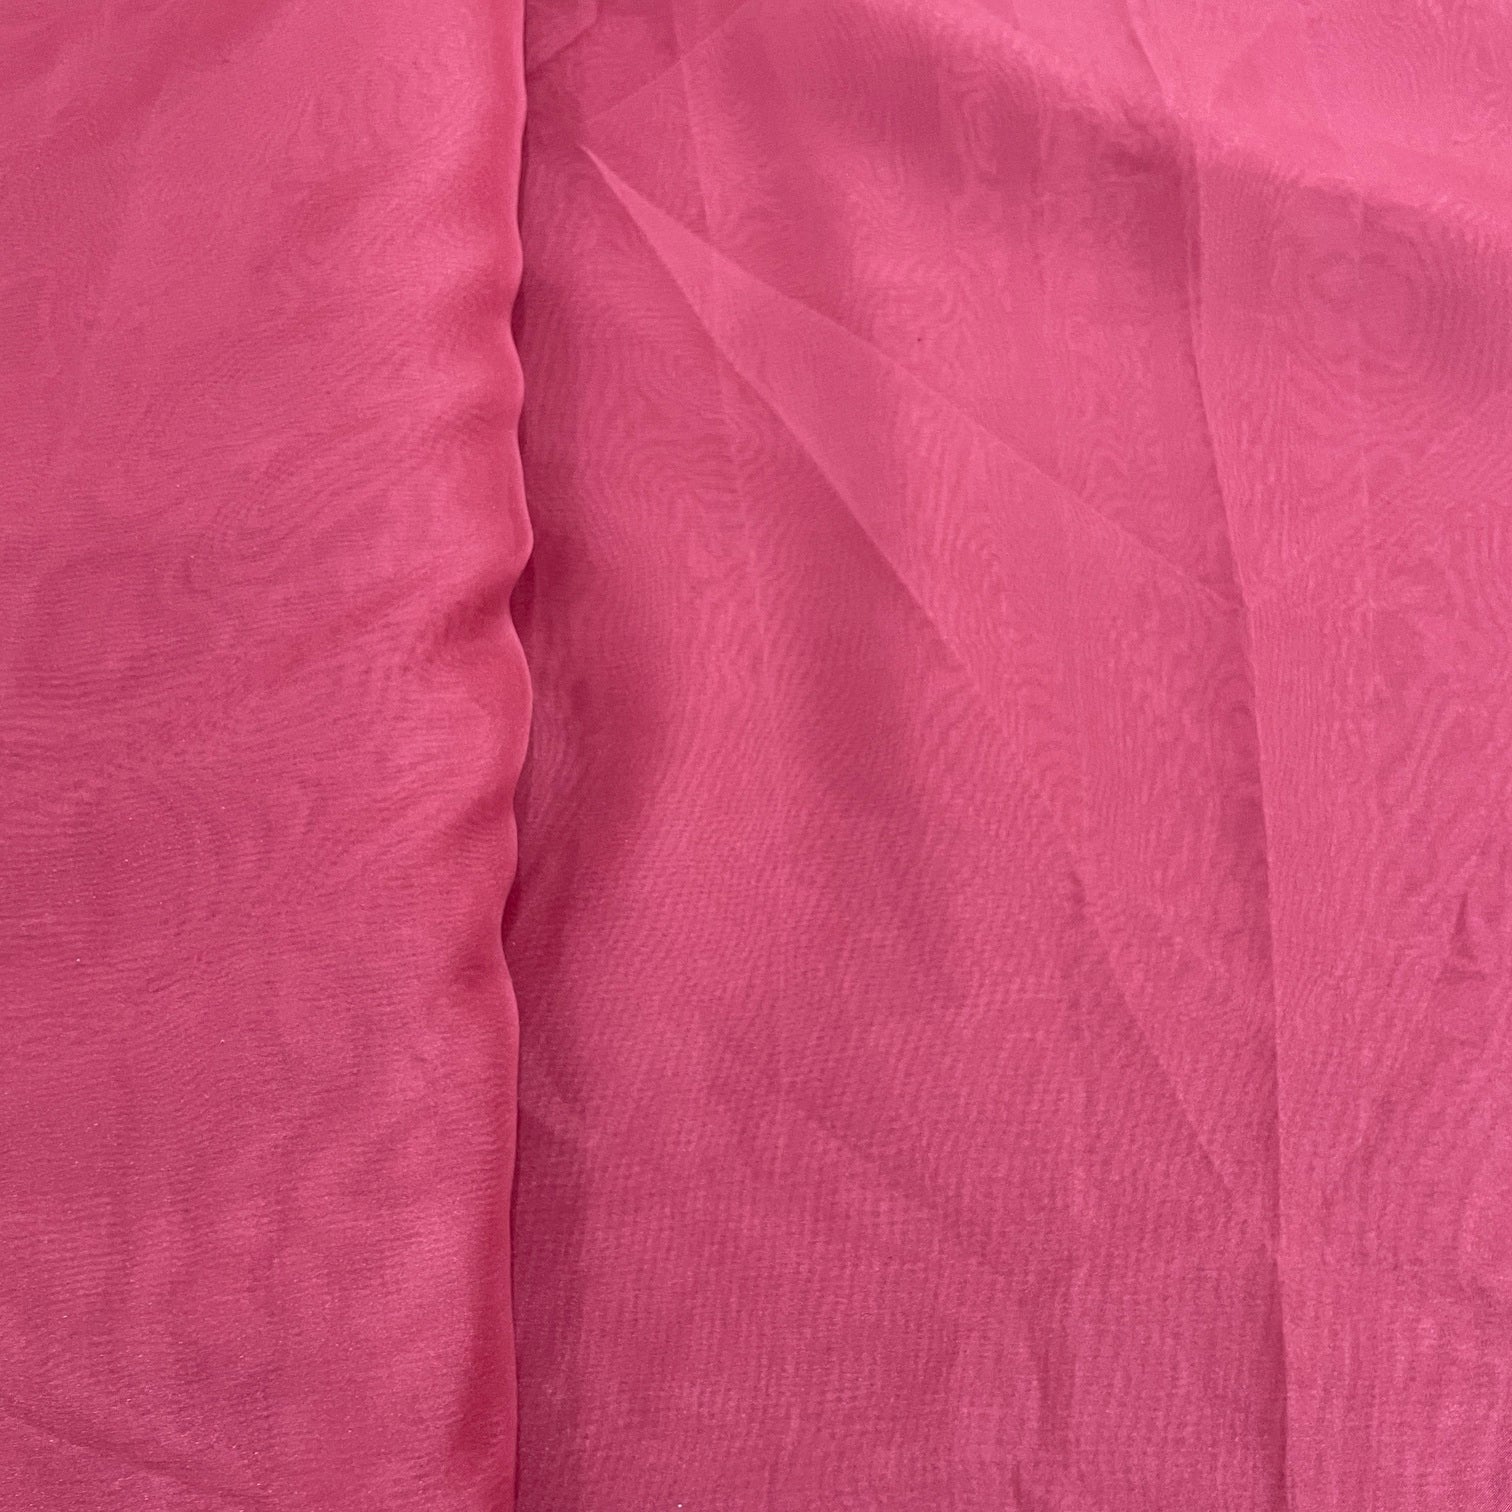 Buy Exclusive Corel Pink Solid Organza Fabric Online – TradeUNO Fabrics